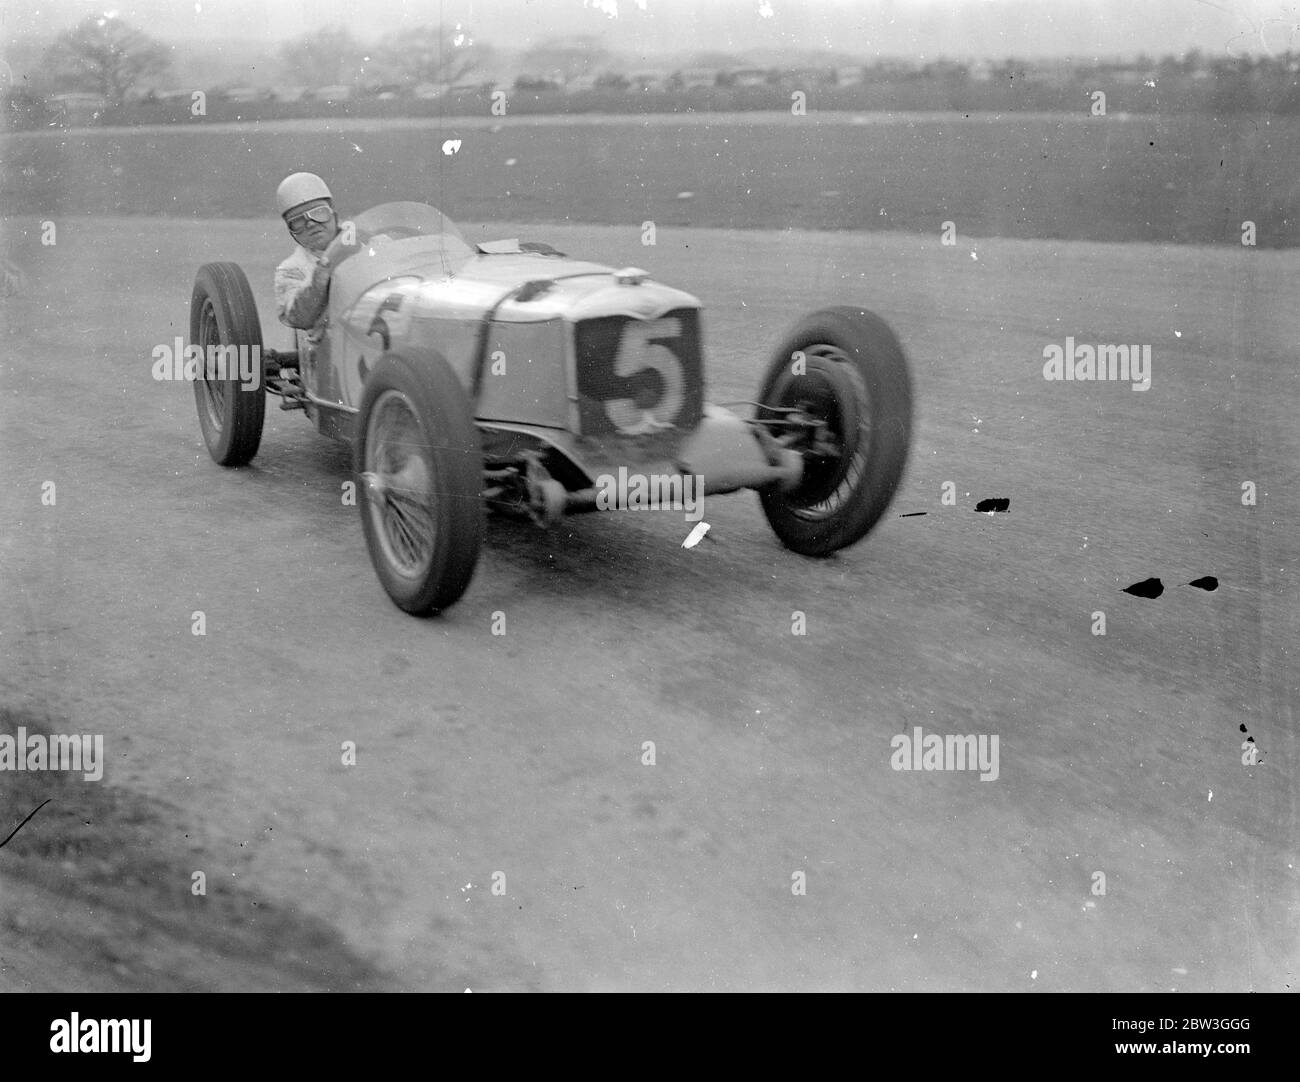 Seemann fahren einhändig, gewinnt British Empire Road Race. Fahren witout Erleichterung für die ganze 250 Meilen der Strecke, R J B Seaman (Maserati) gewann das British Empire Trophy Race, das erste große Autorennen der Saison in Donington Park, Derby. Er durchschnittlich 66.33 Meilen pro Stunde. P S Fairfield (E F A) war Zweiter und W C Everitt (Alfa Romeo) wurde Dritter. 27 der besten Fahrer Großbritanniens traten an der Veranstaltung an. Foto zeigt, Freddie Picom auf seiner Riley. April 1936 Stockfoto